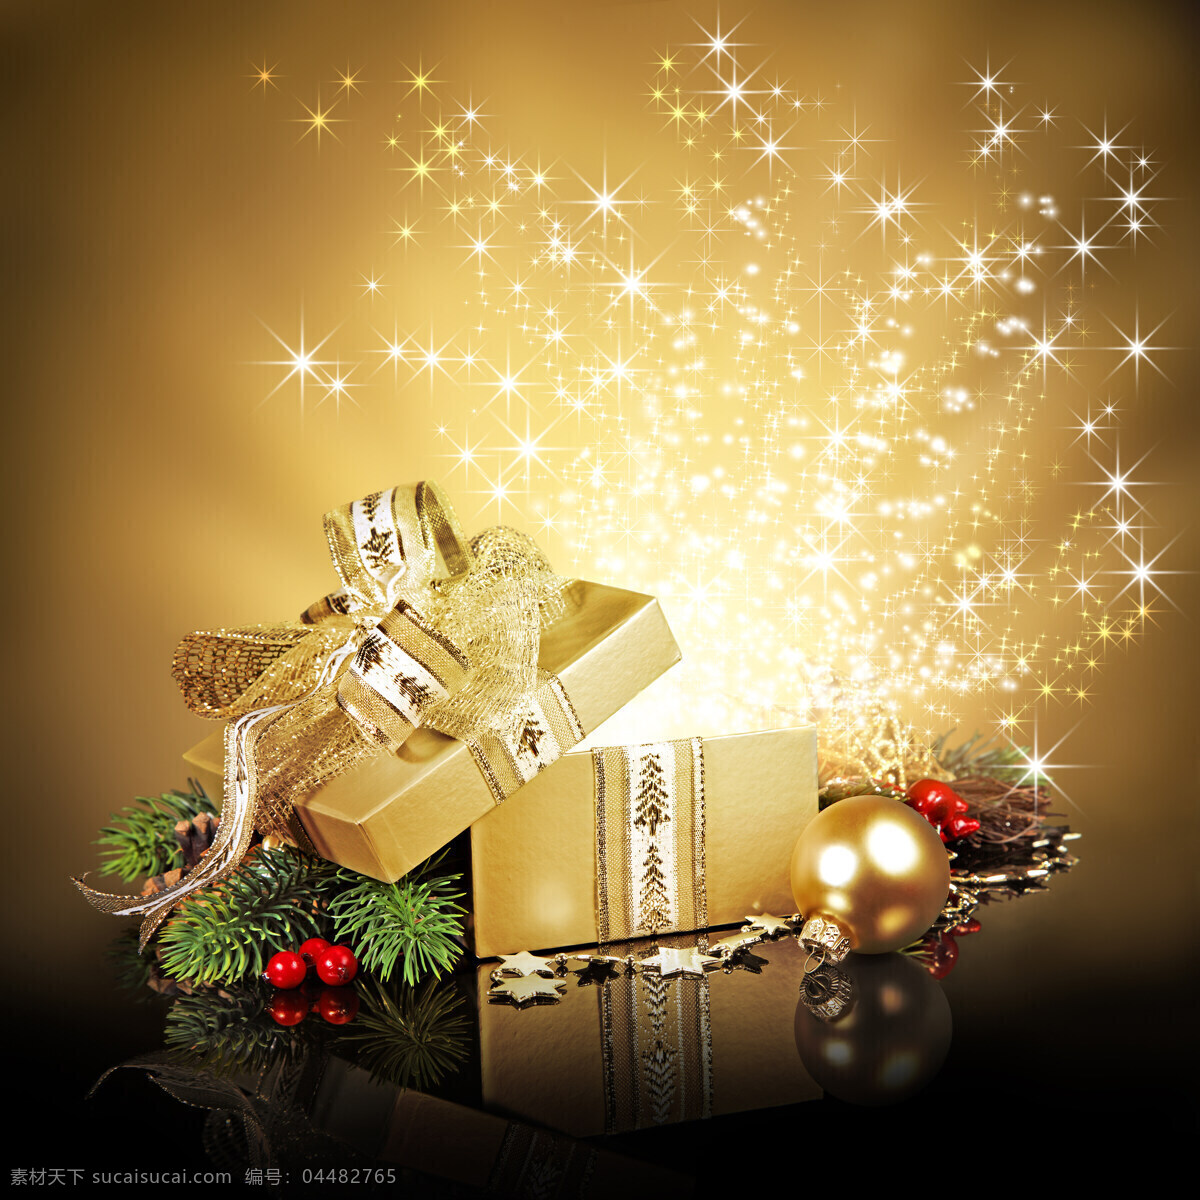 金色 梦幻 礼物 盒 礼物盒 星星 圣诞节 节日素材 圣诞素材 节日庆典 生活百科